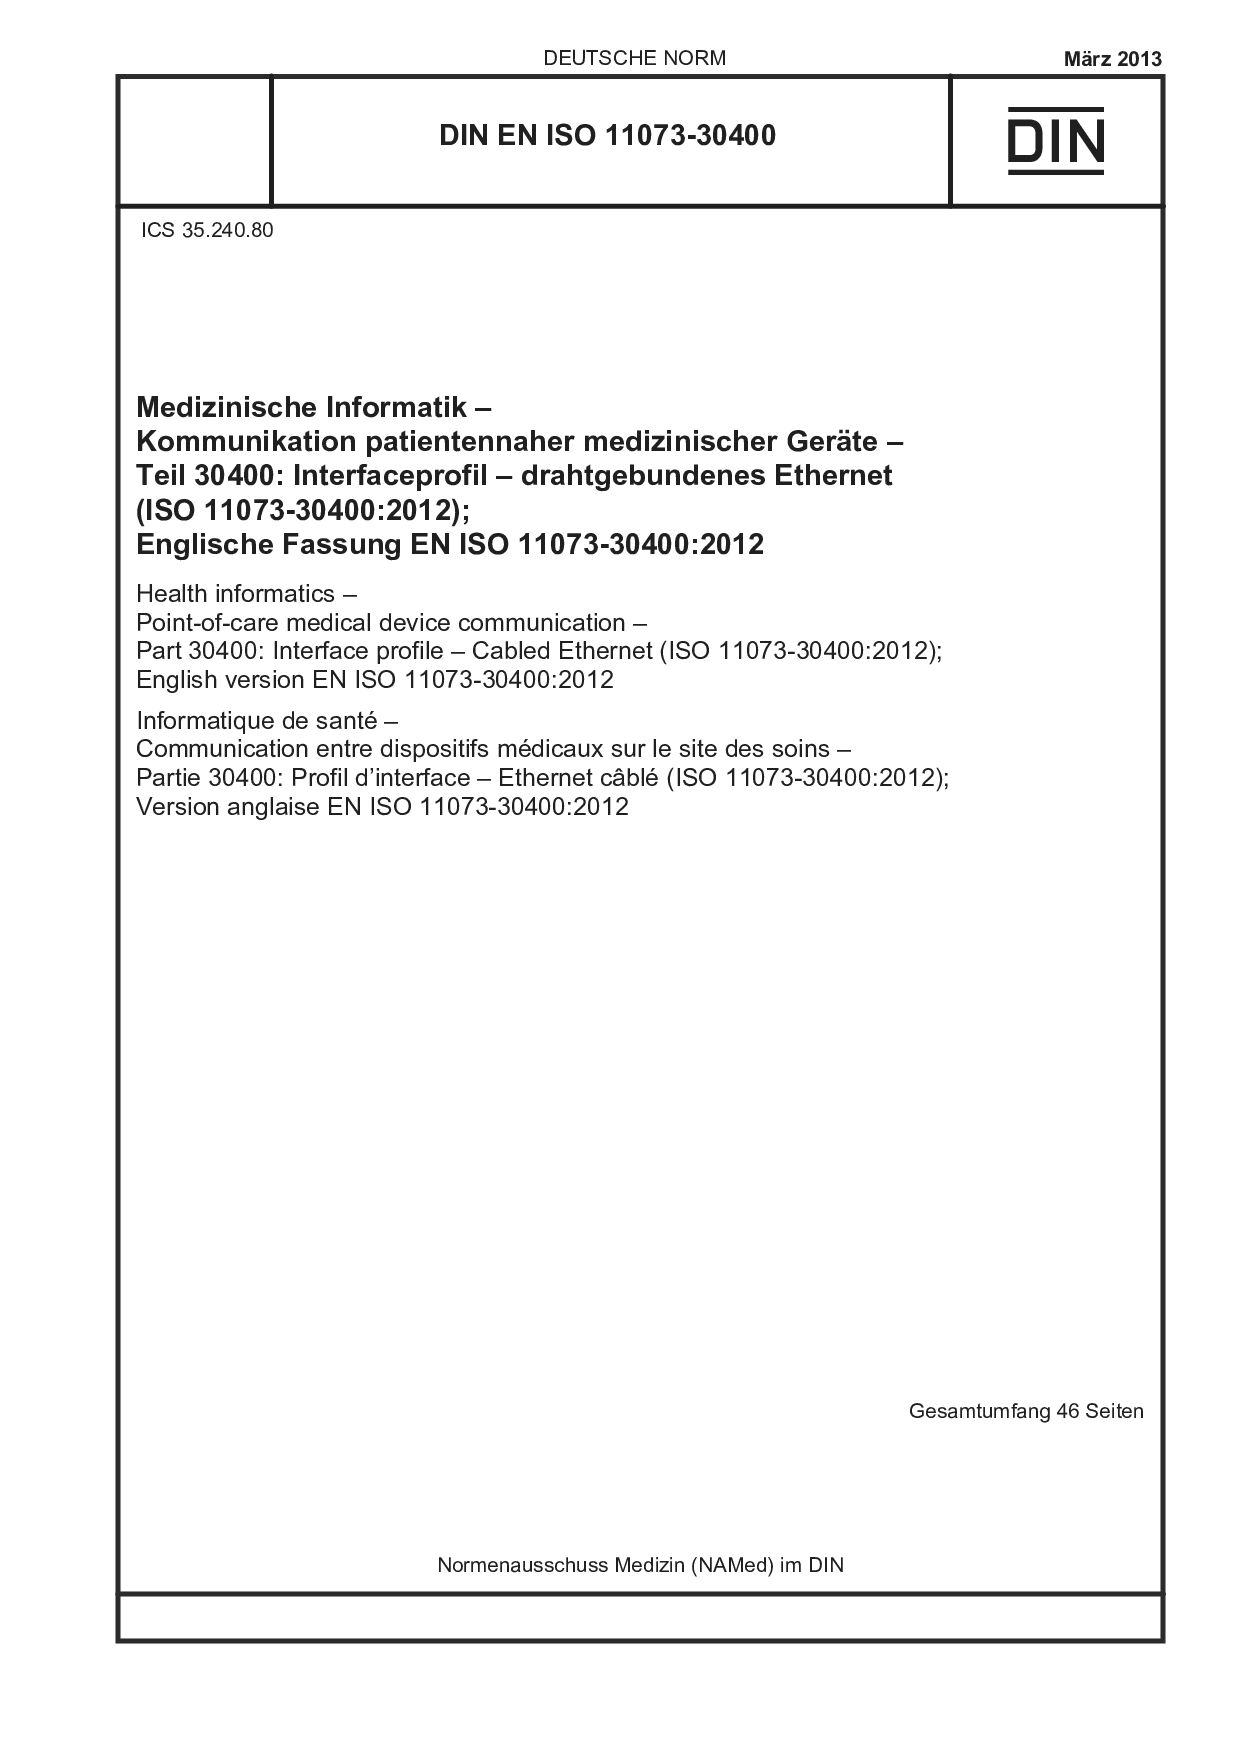 DIN EN ISO 11073-30400:2013